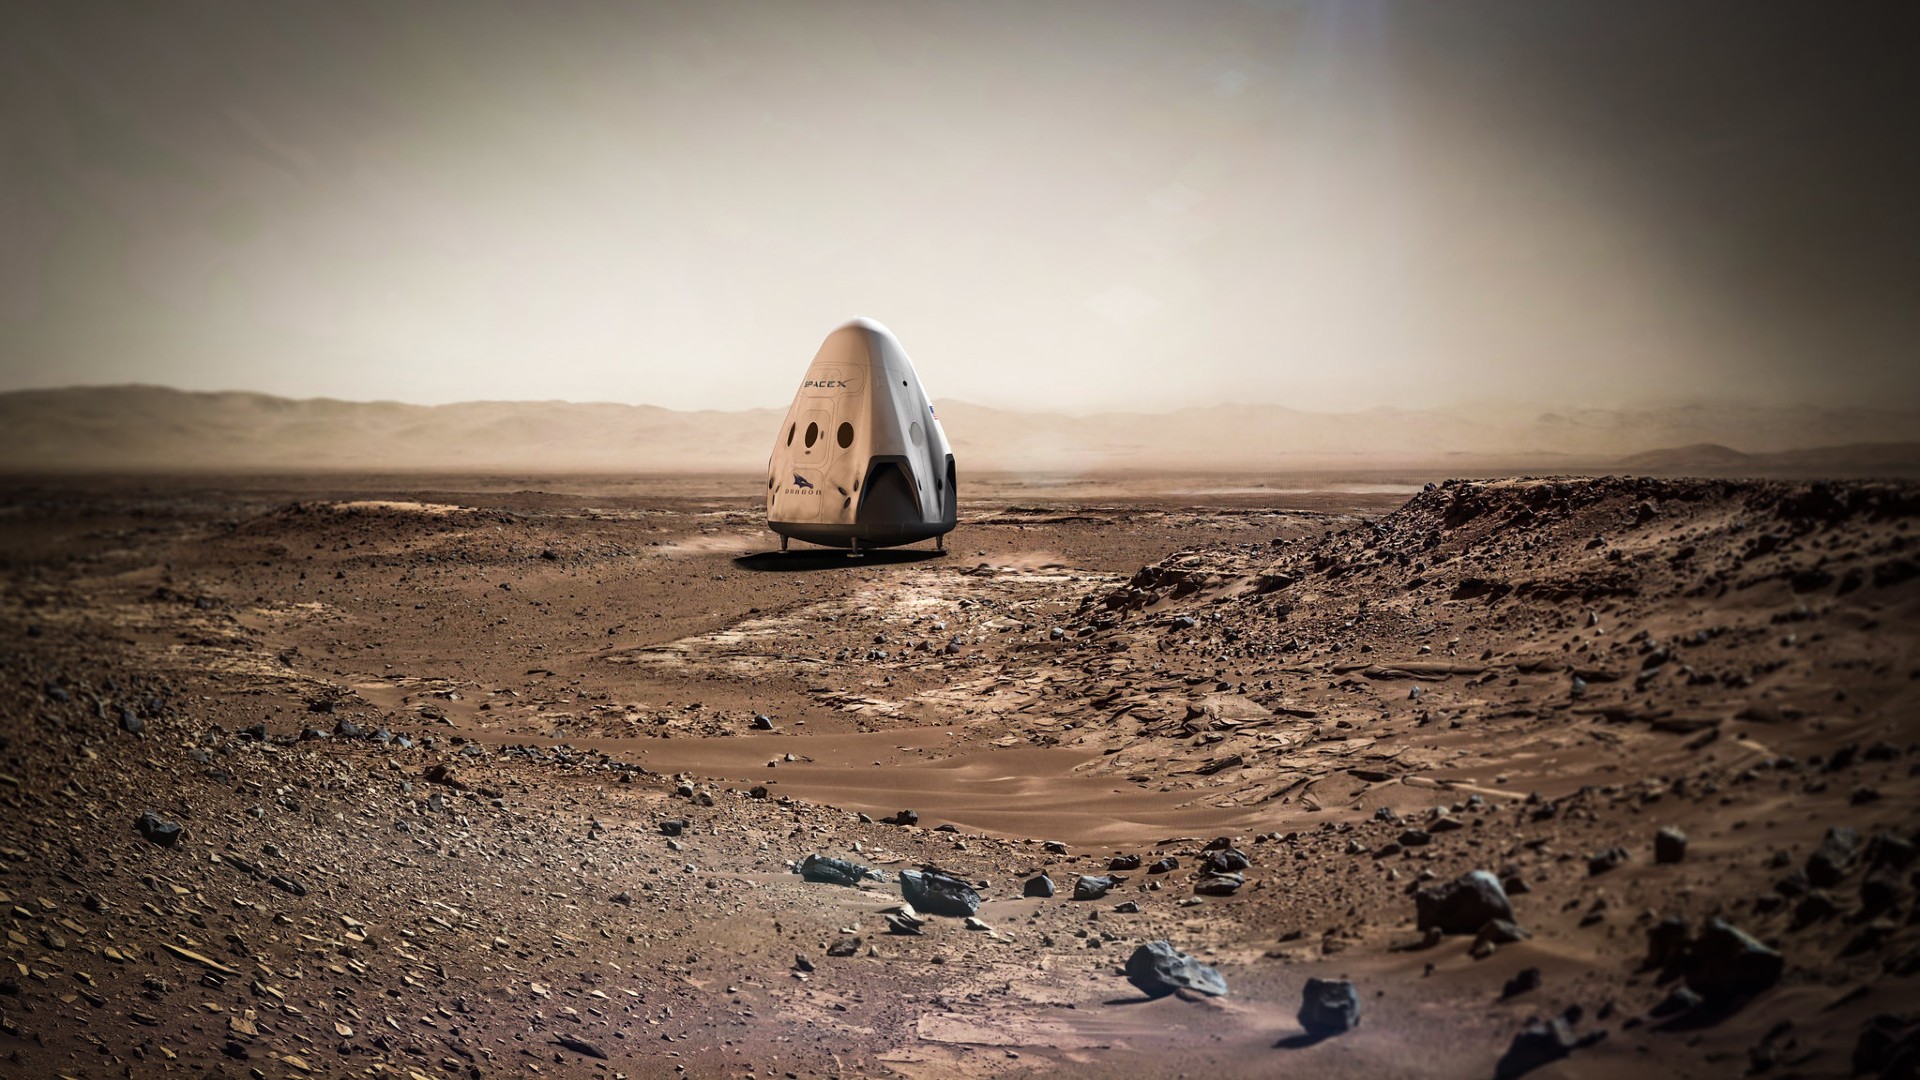 Ilustracja przedstawiająca lądowanie kapsuły SpaceX Dragon na Marsie.